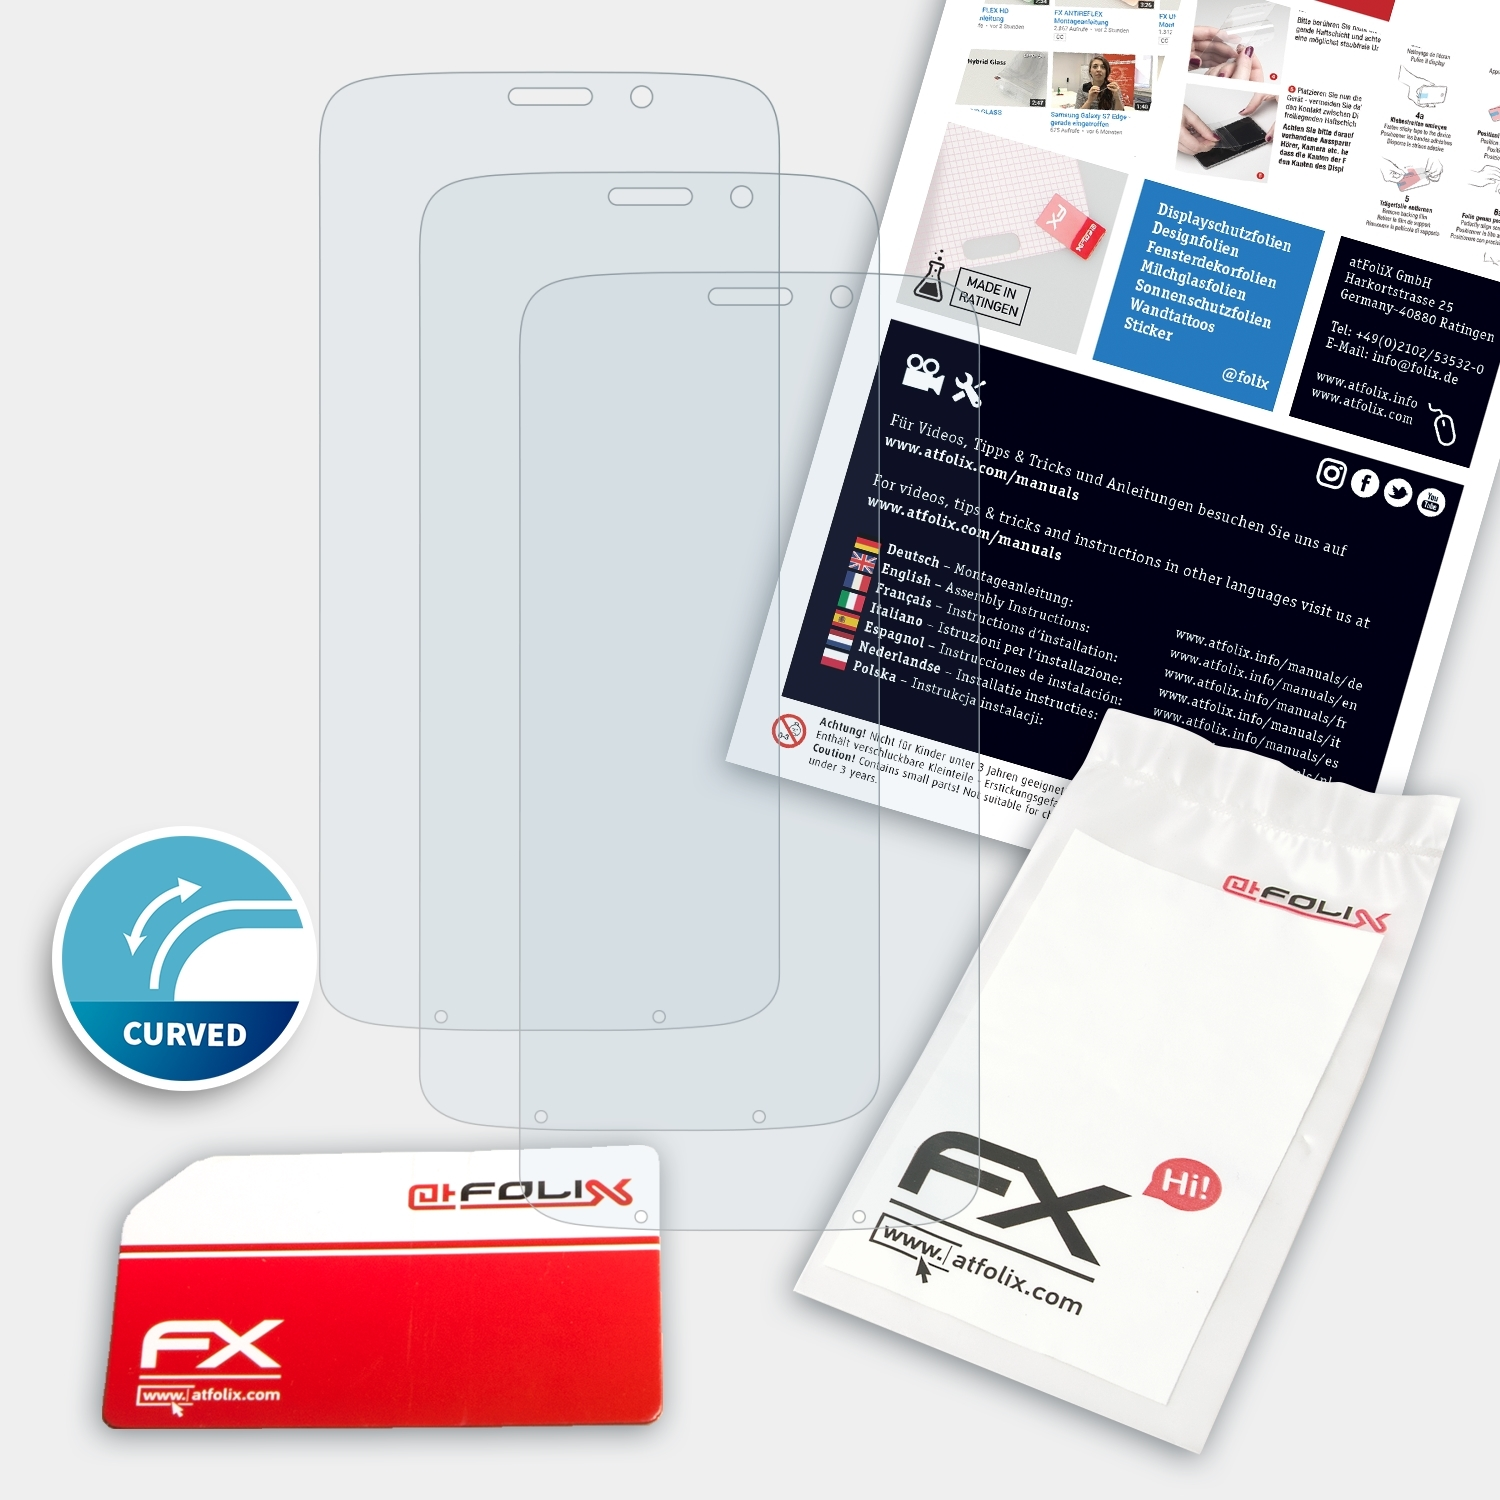 Play) Z3 Displayschutz(für Moto Lenovo Motorola FX-ActiFleX 3x ATFOLIX